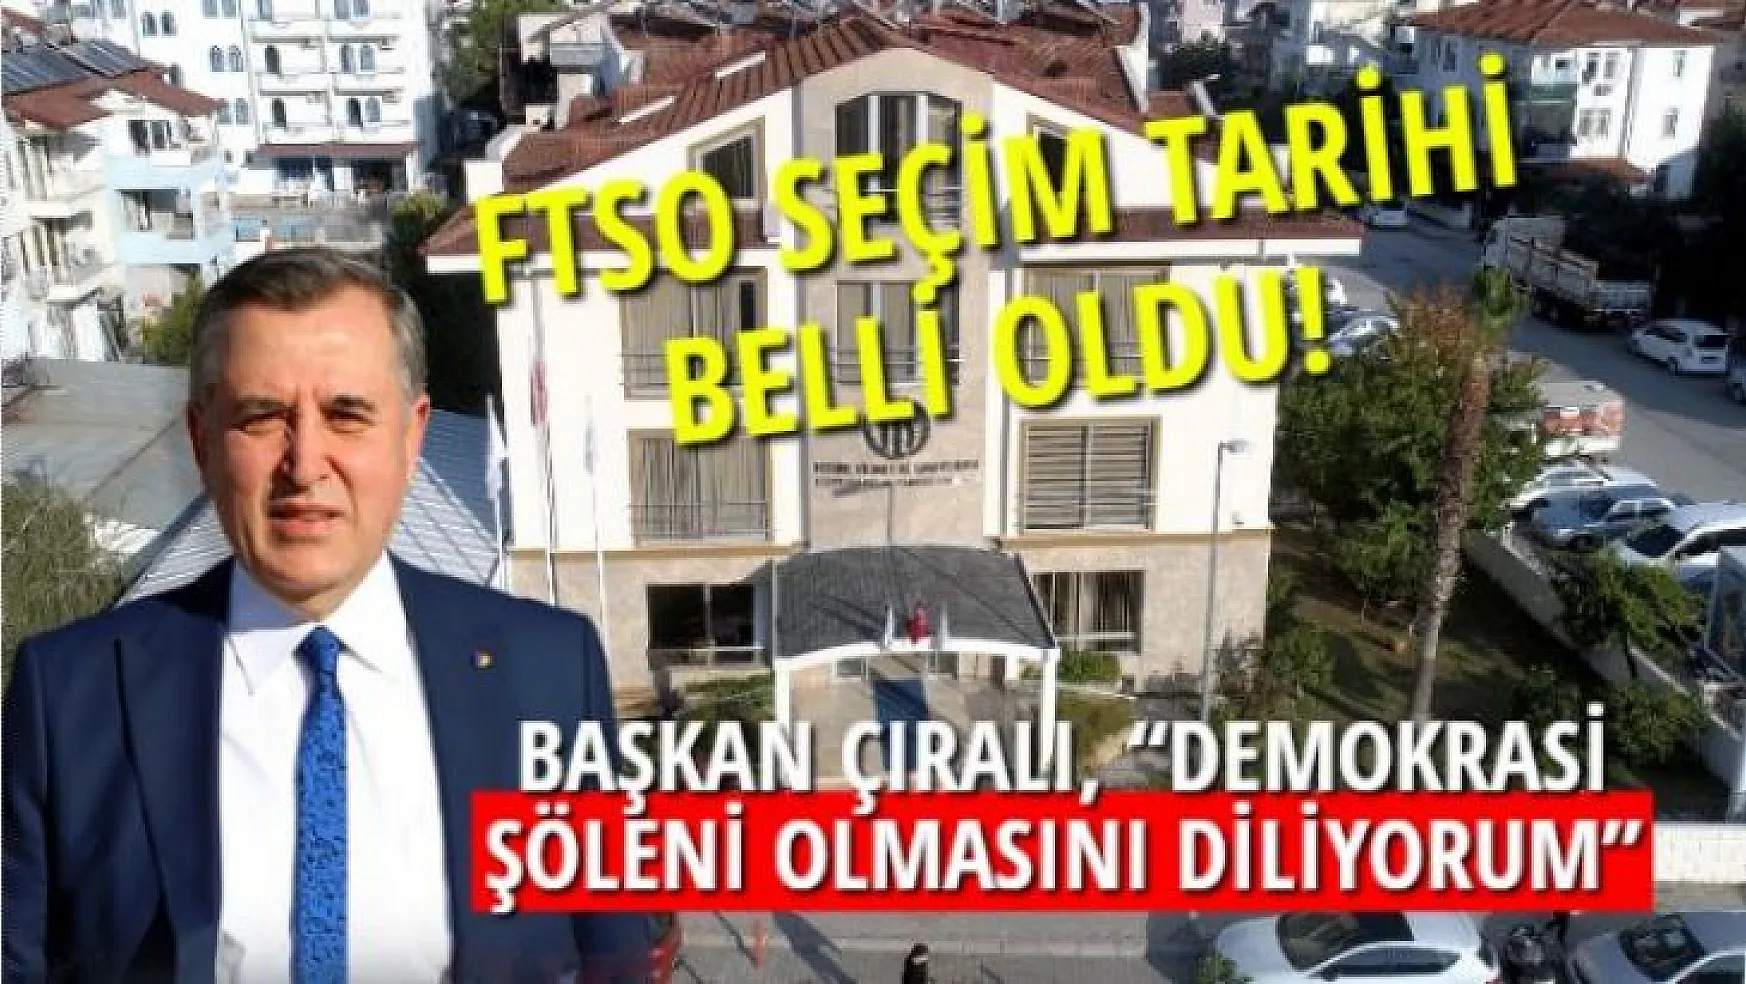 FTSO SEÇİM TARİHİ BELLİ OLDU! 